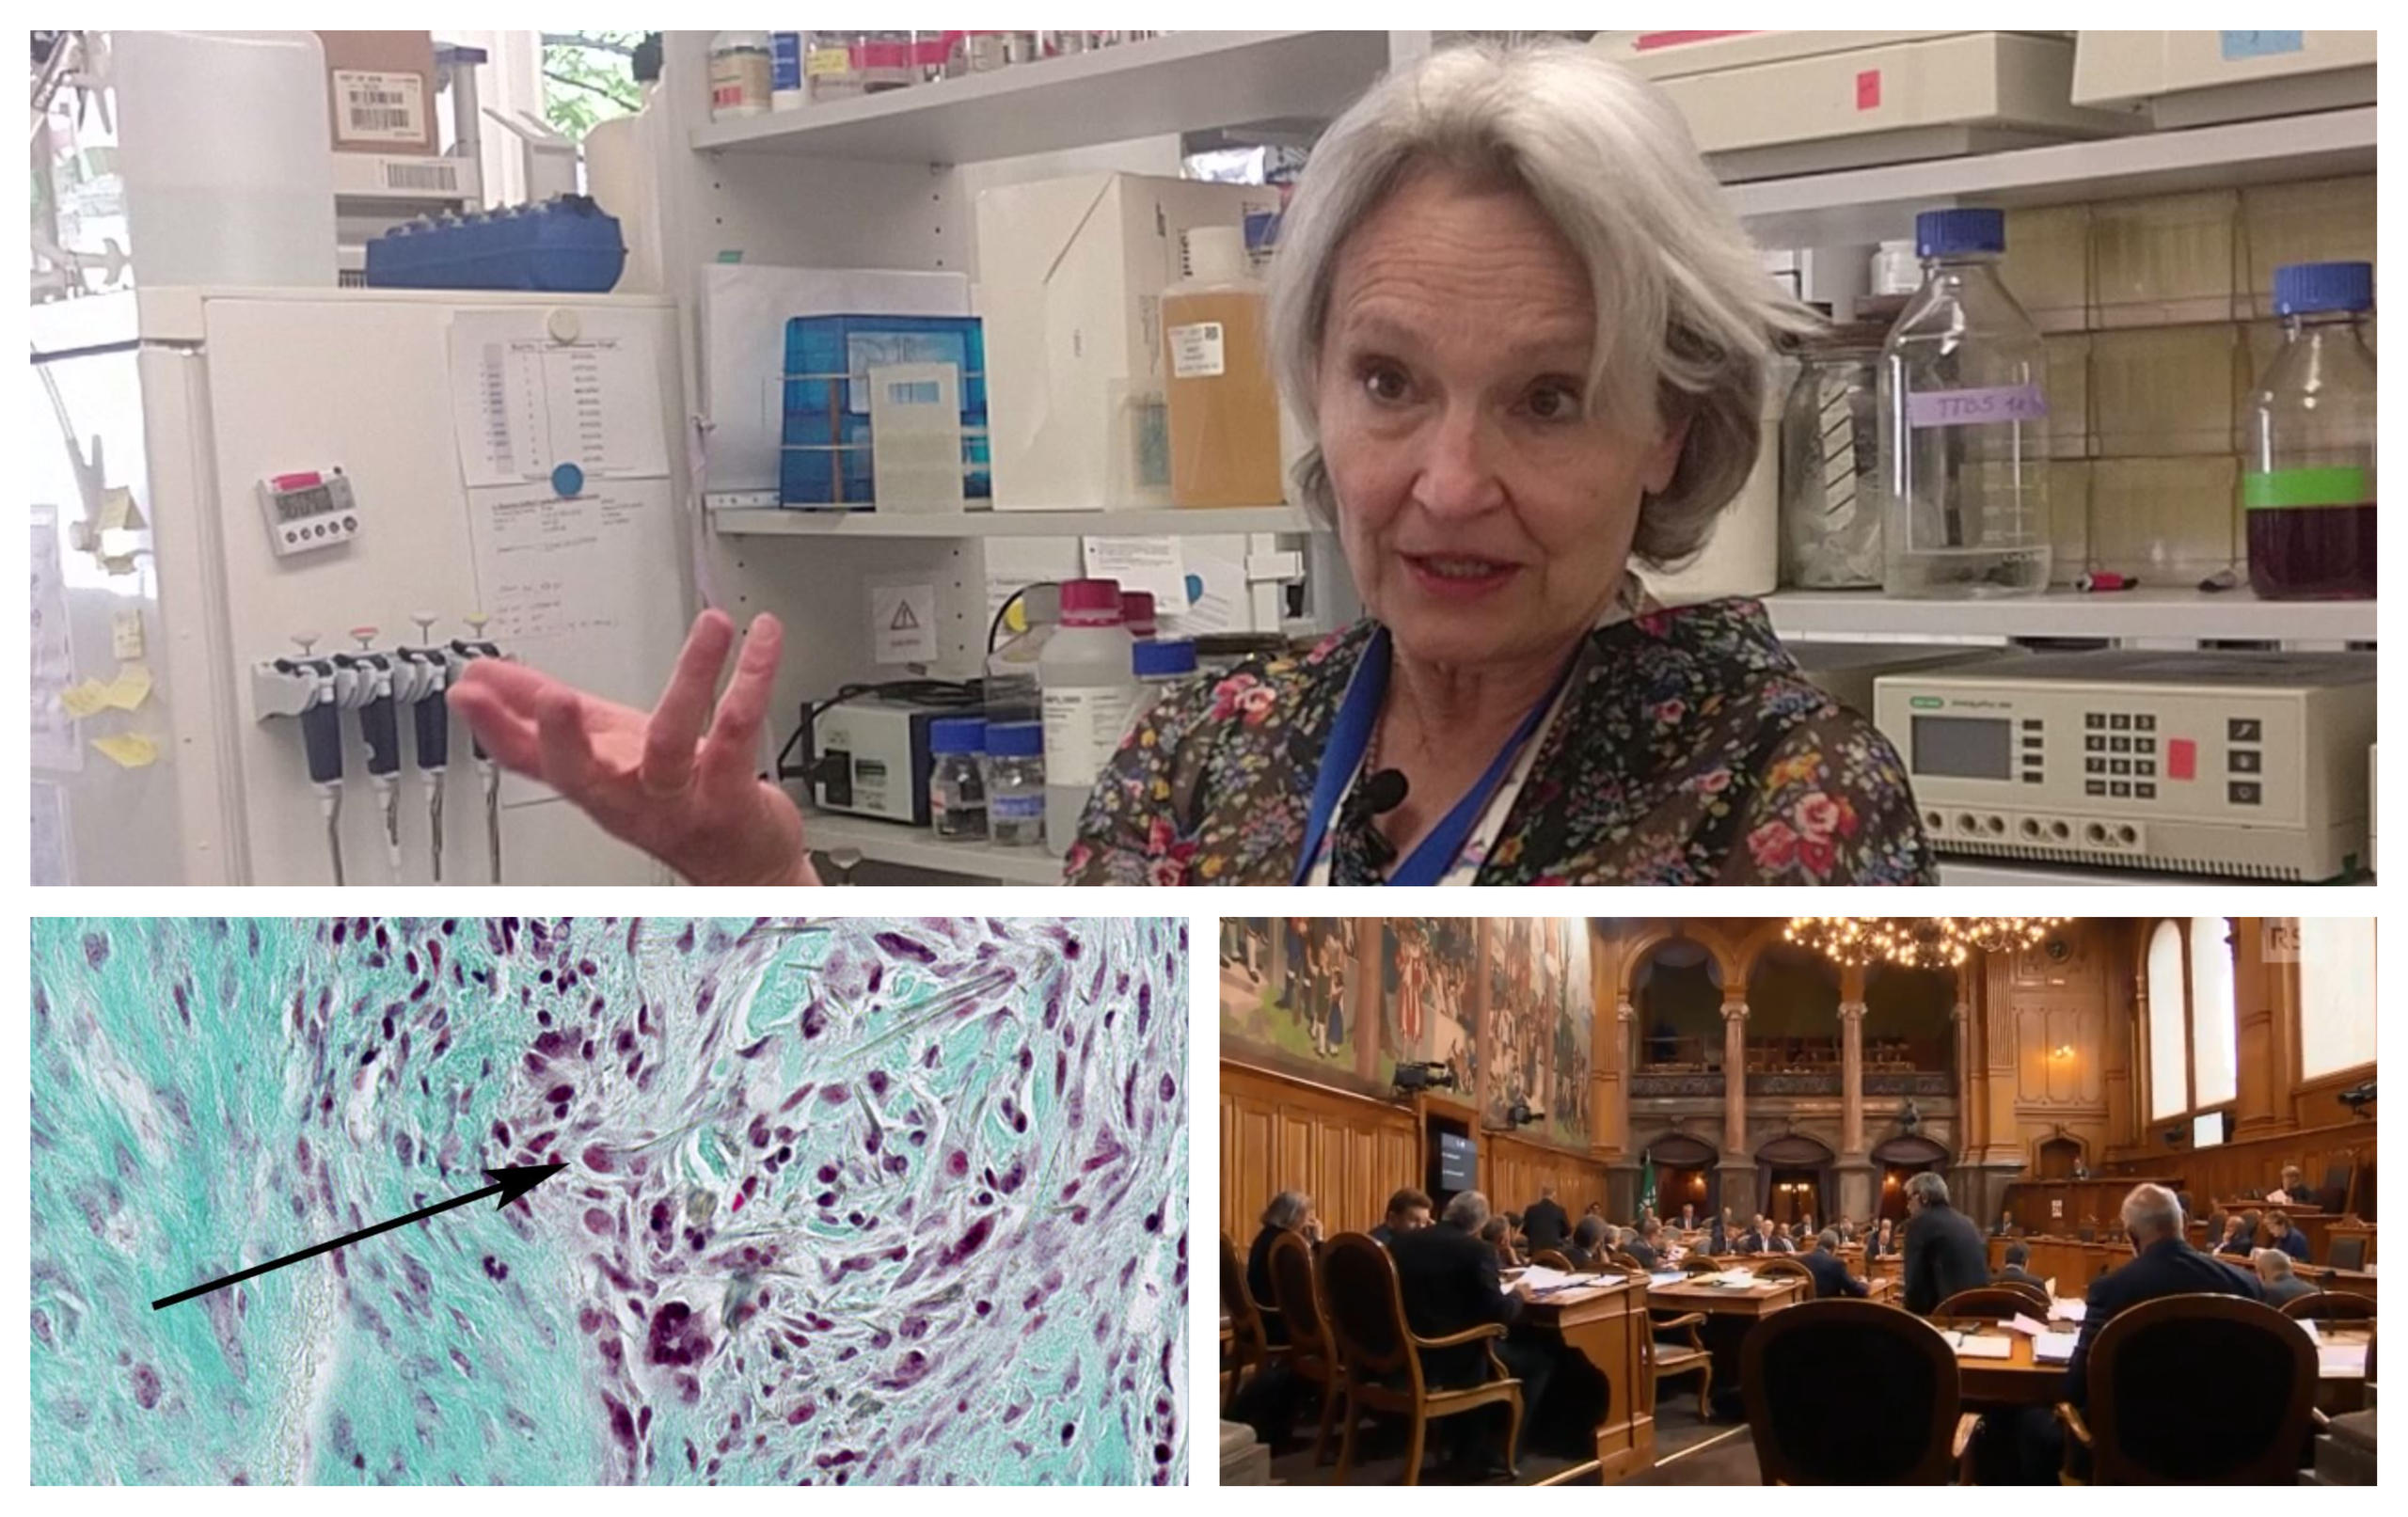 Collage: ricercatrice immagine al microscopia amianto, parlamento